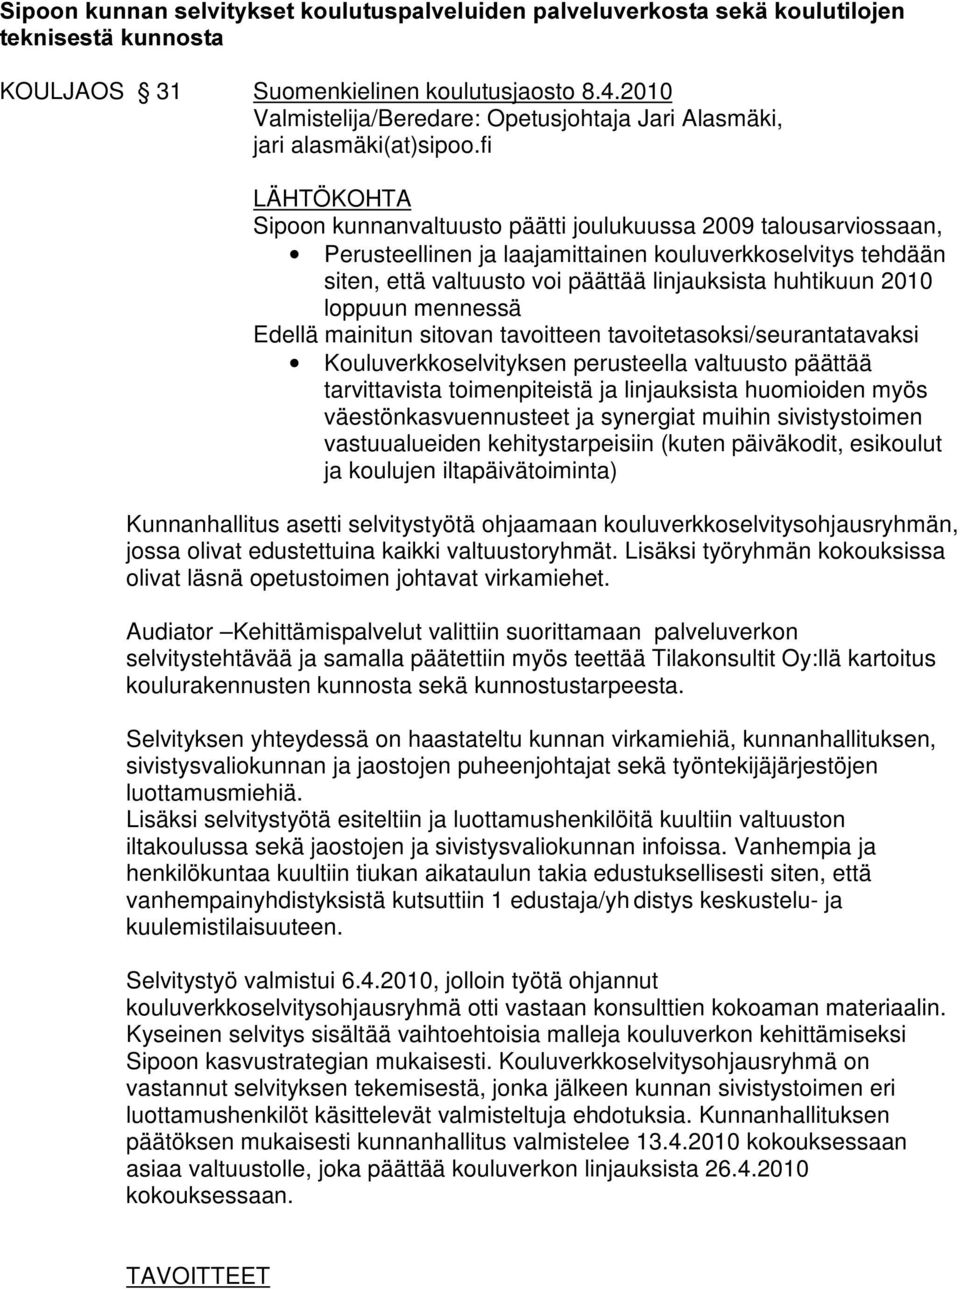 fi LÄHTÖKOHTA Sipoon kunnanvaltuusto päätti joulukuussa 2009 talousarviossaan, Perusteellinen ja laajamittainen kouluverkkoselvitys tehdään siten, että valtuusto voi päättää linjauksista huhtikuun